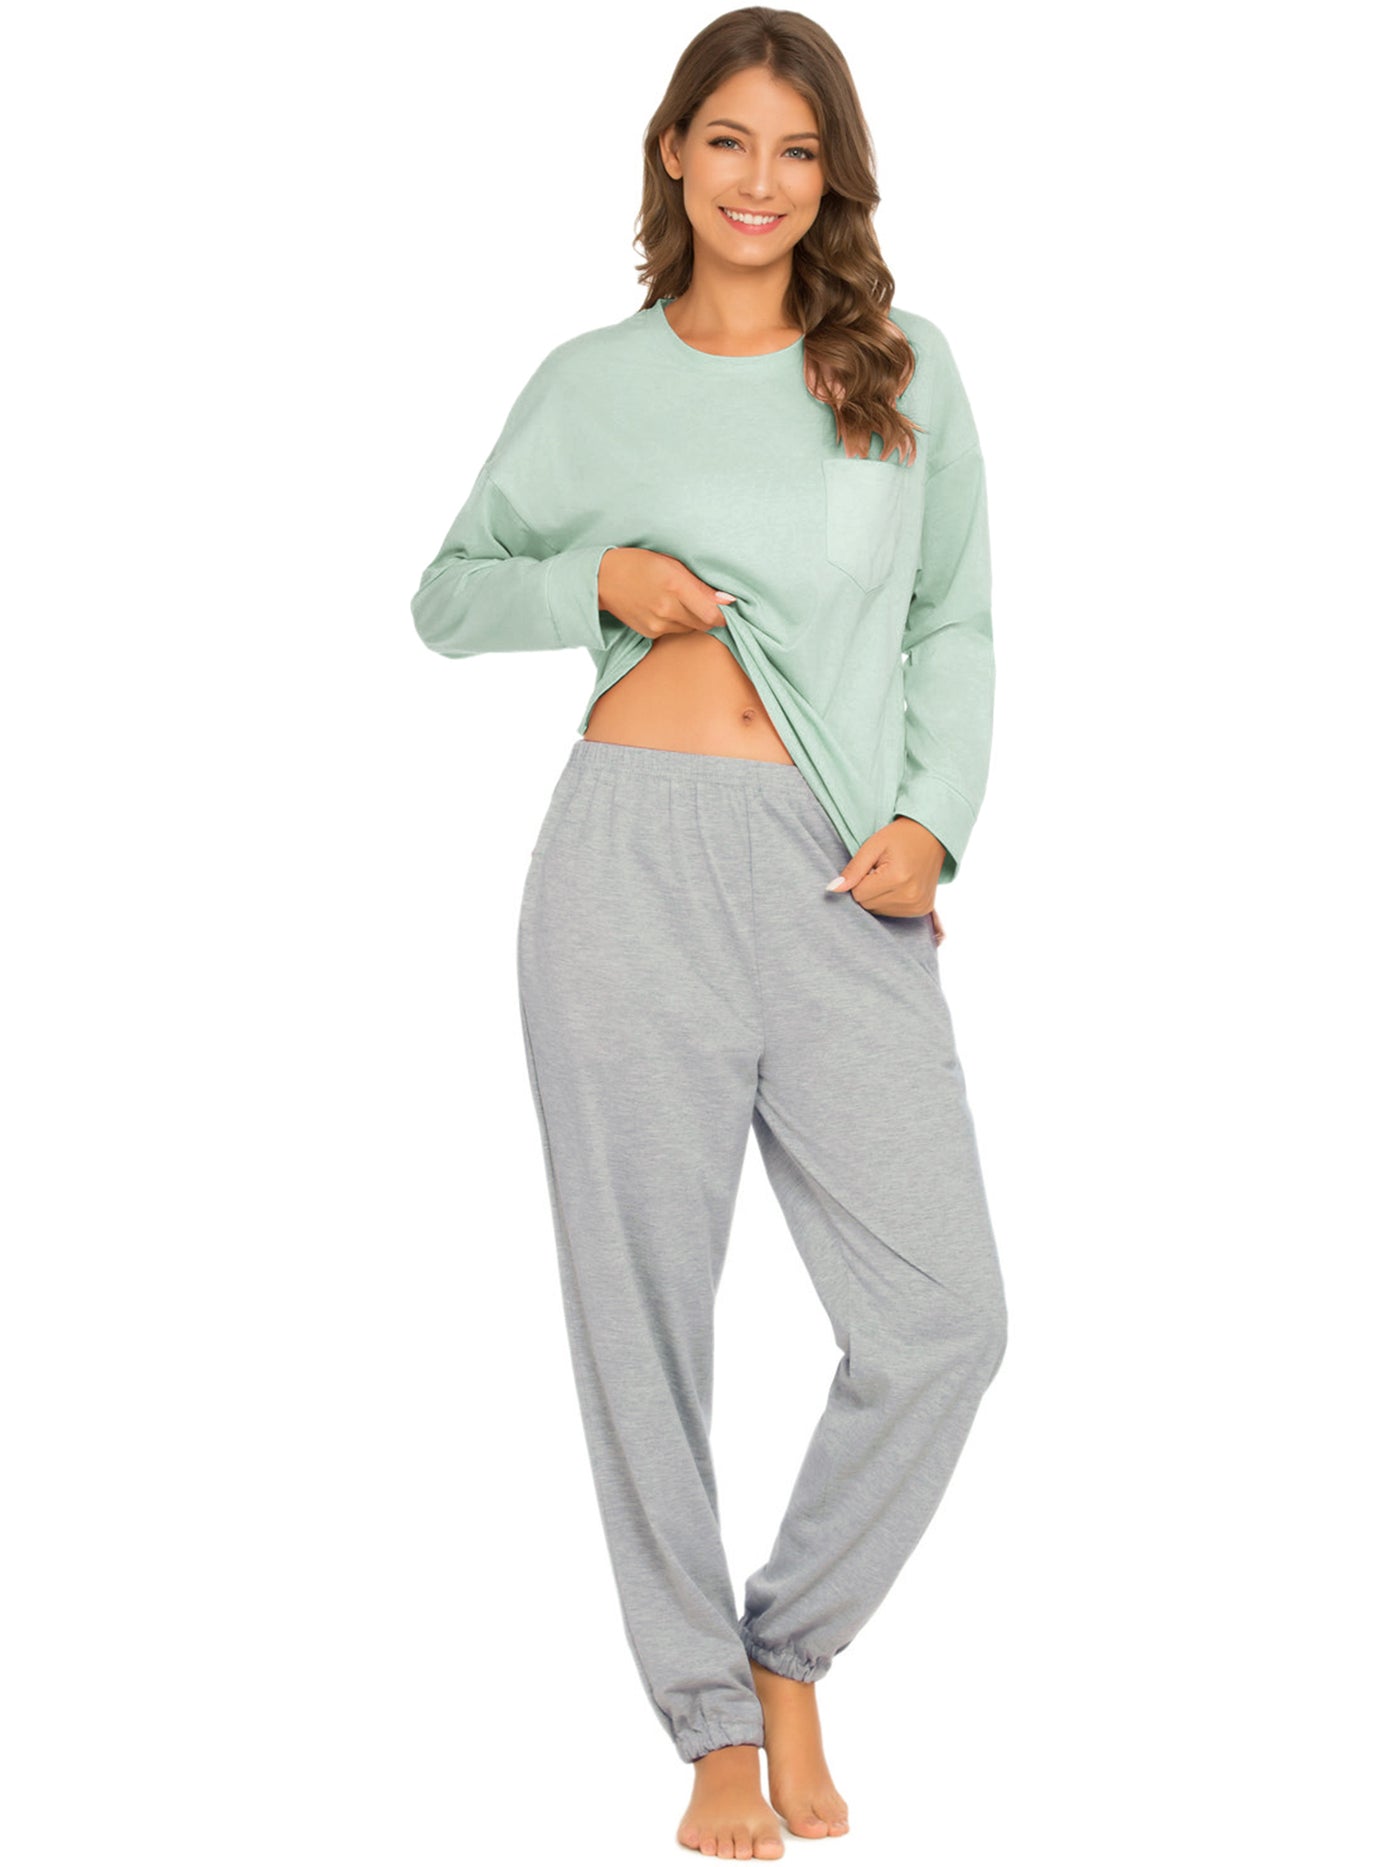 Bublédon Women's Sleepwear Lounge Solid Nightwear Pajama Set